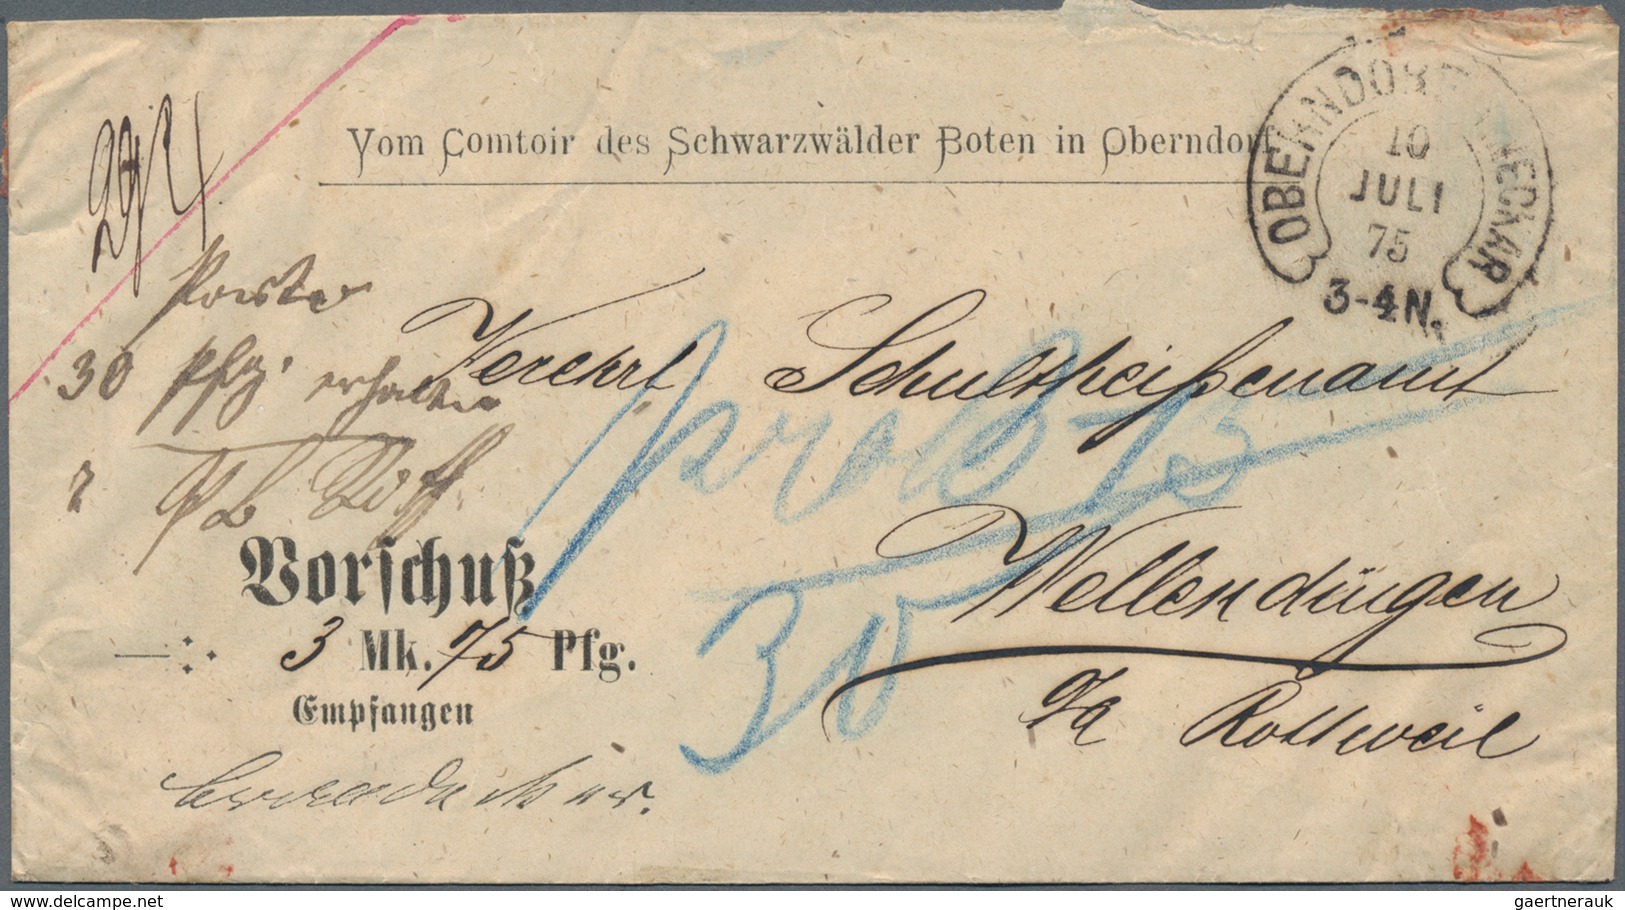 Württemberg - Vorphilatelie: 1780/1930, vielseitiger Sammlungsbestand von 300+ meist markenlosen Bel